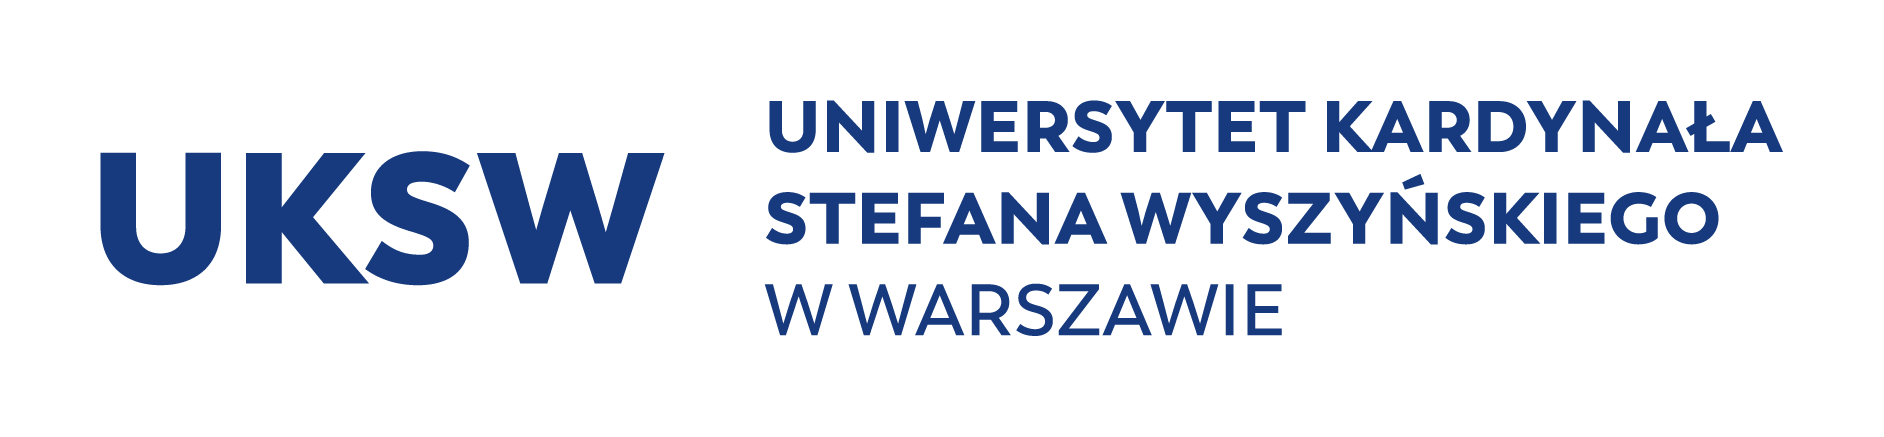 Uniwersytet Kardynała Stefana Wyszyńskiego, logo